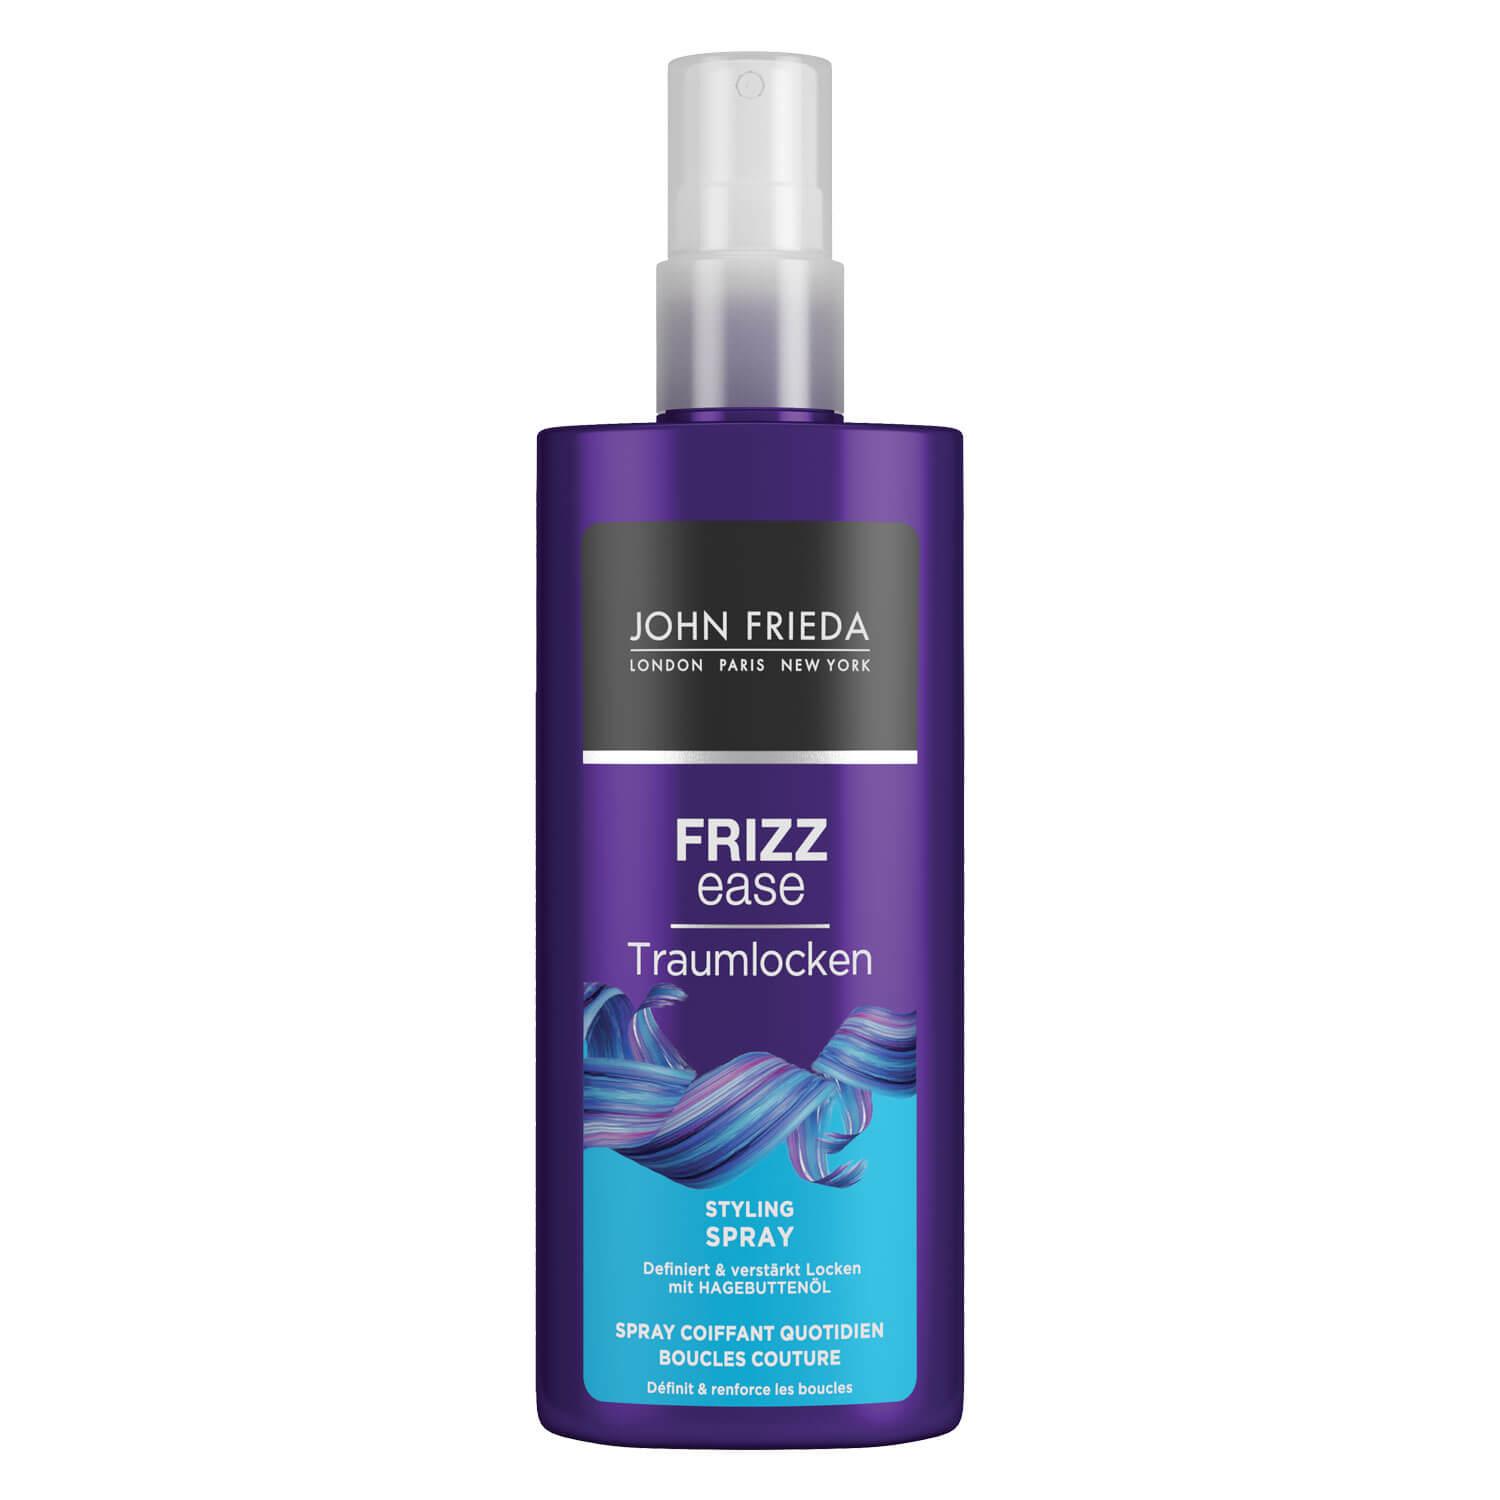 Frizz Ease - Traumlocken Styling Spray